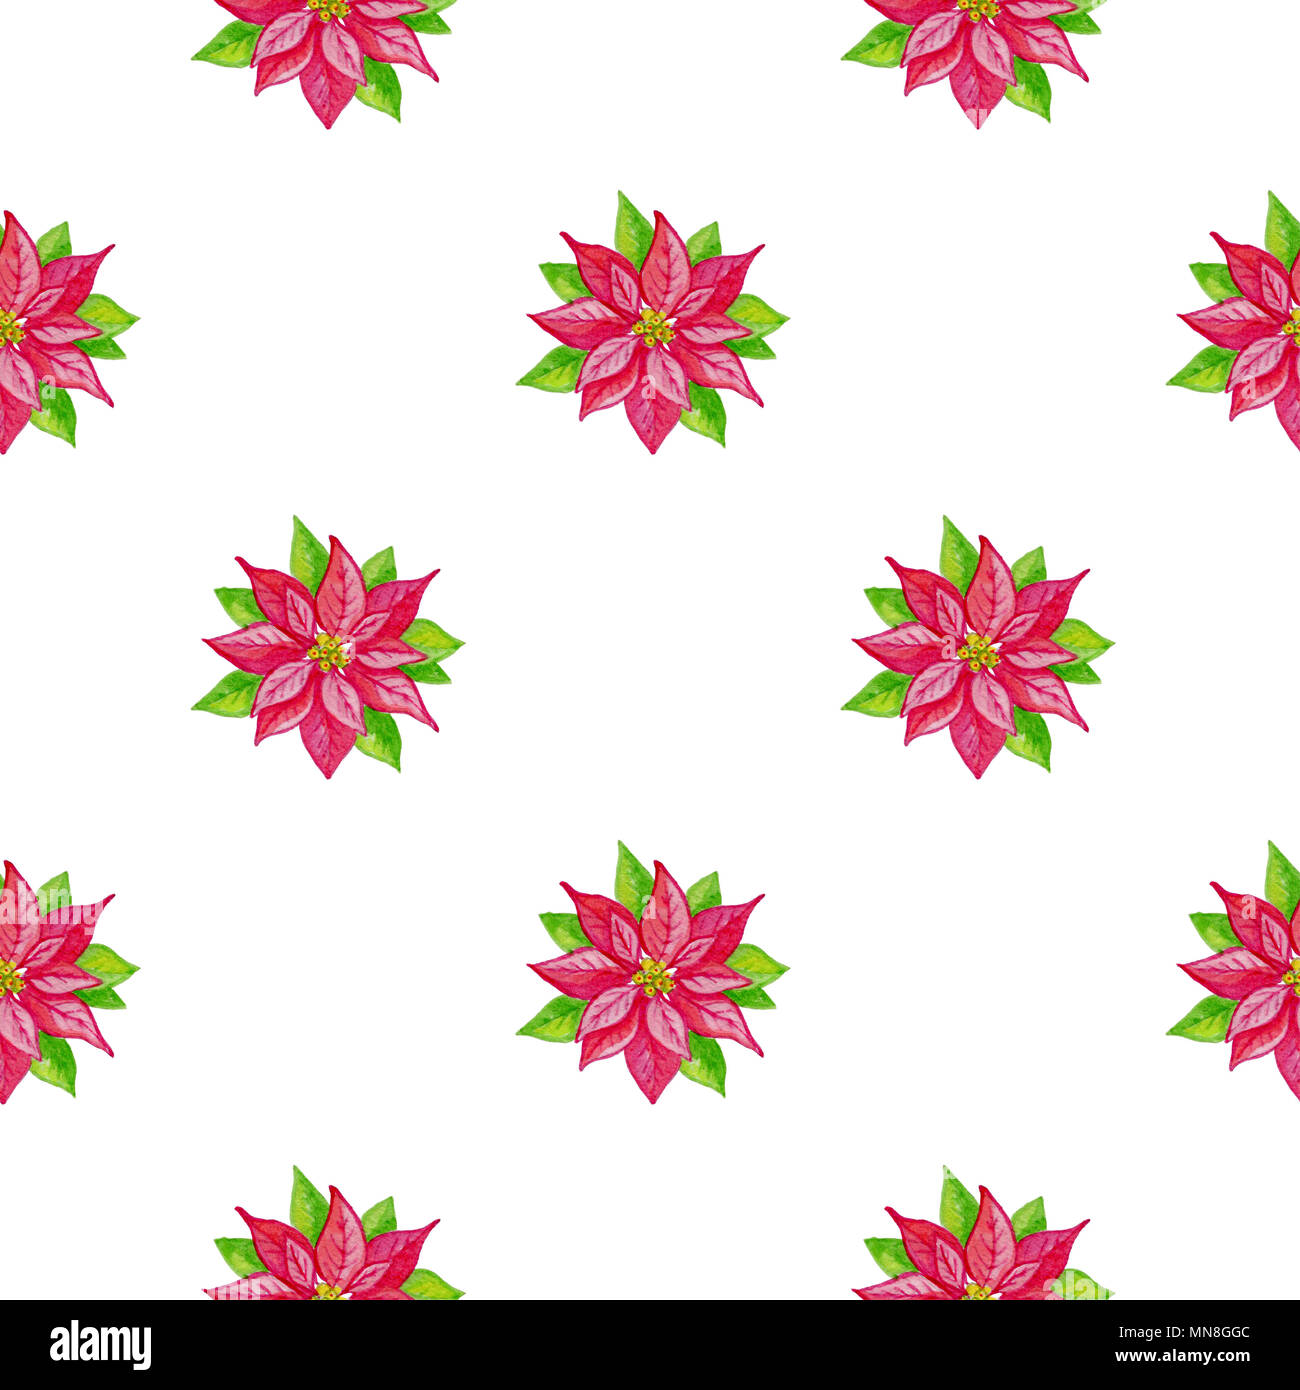 Dekorative Weihnachten Aquarell nahtlose Muster mit roten Blumen auf weißem Hintergrund Stockfoto